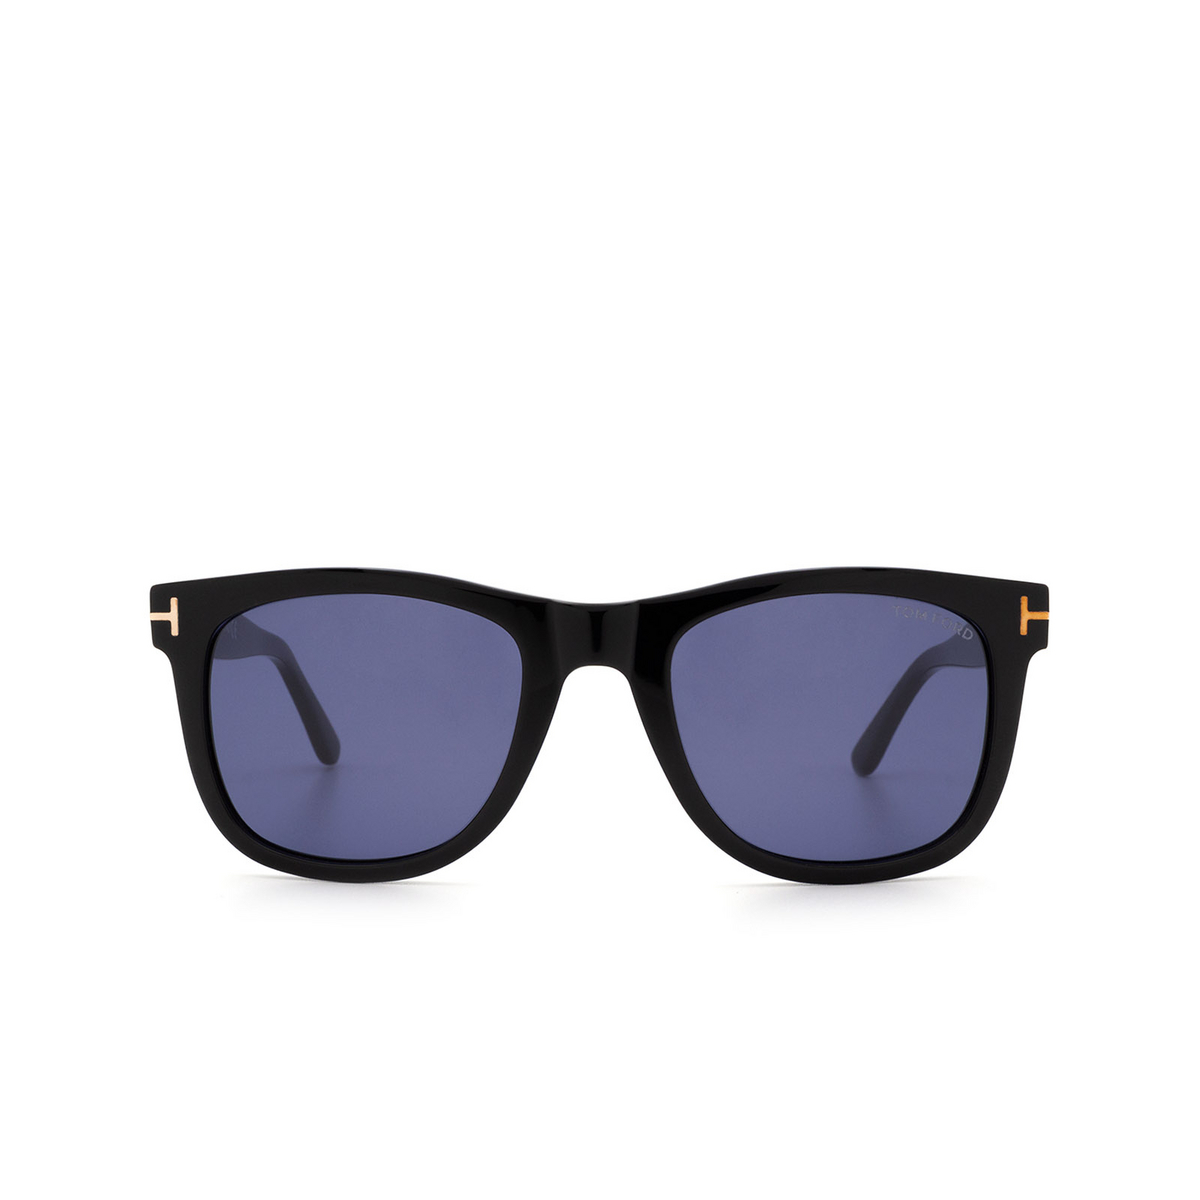 Tom Ford LEO Sunglasses 01V Shiny Black - front view